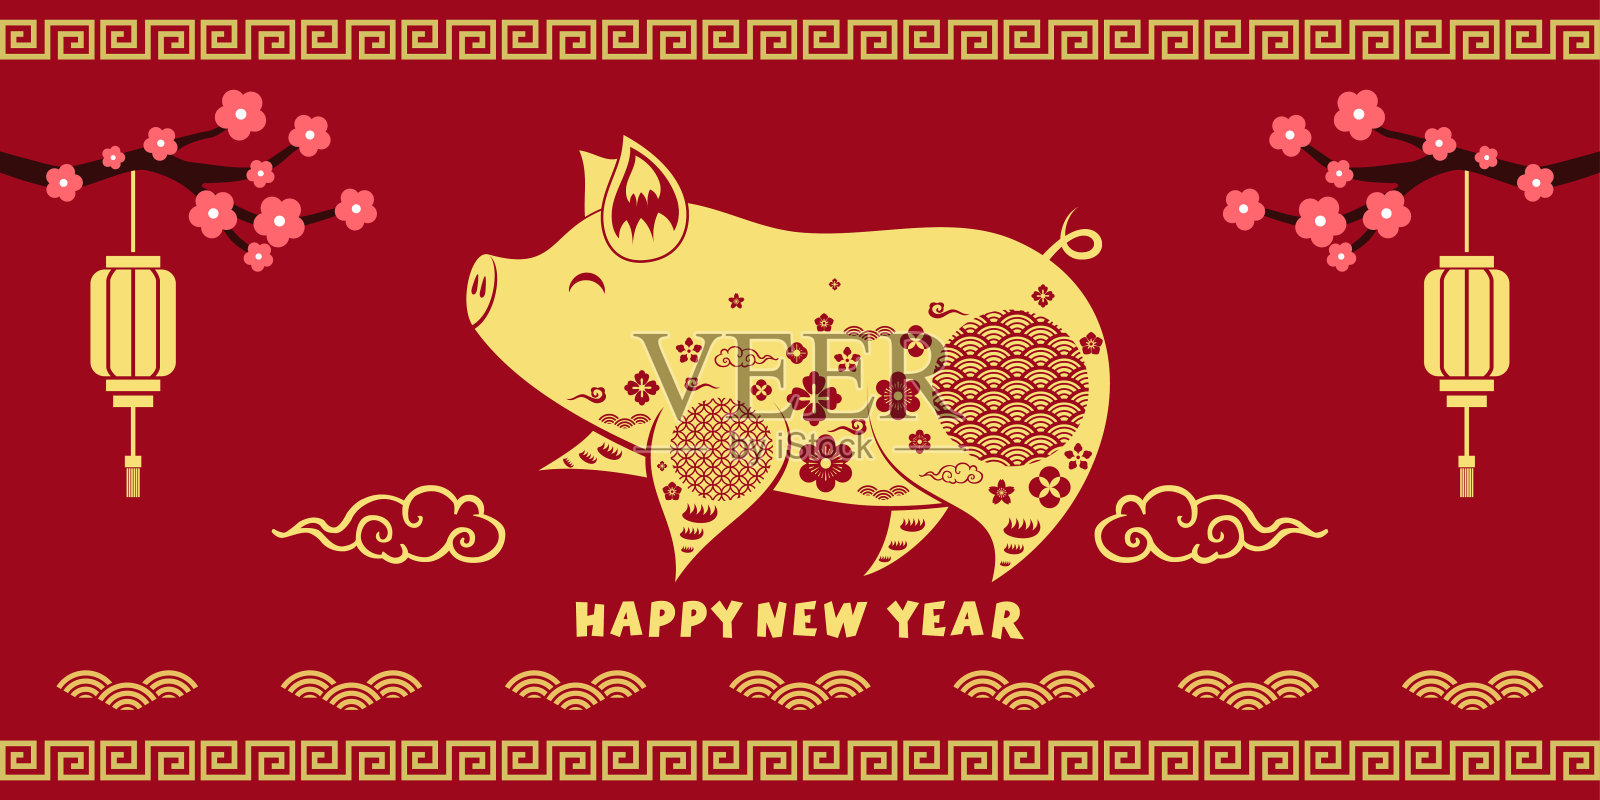 祝猪年快乐，中国传统节日春节快乐设计模板素材